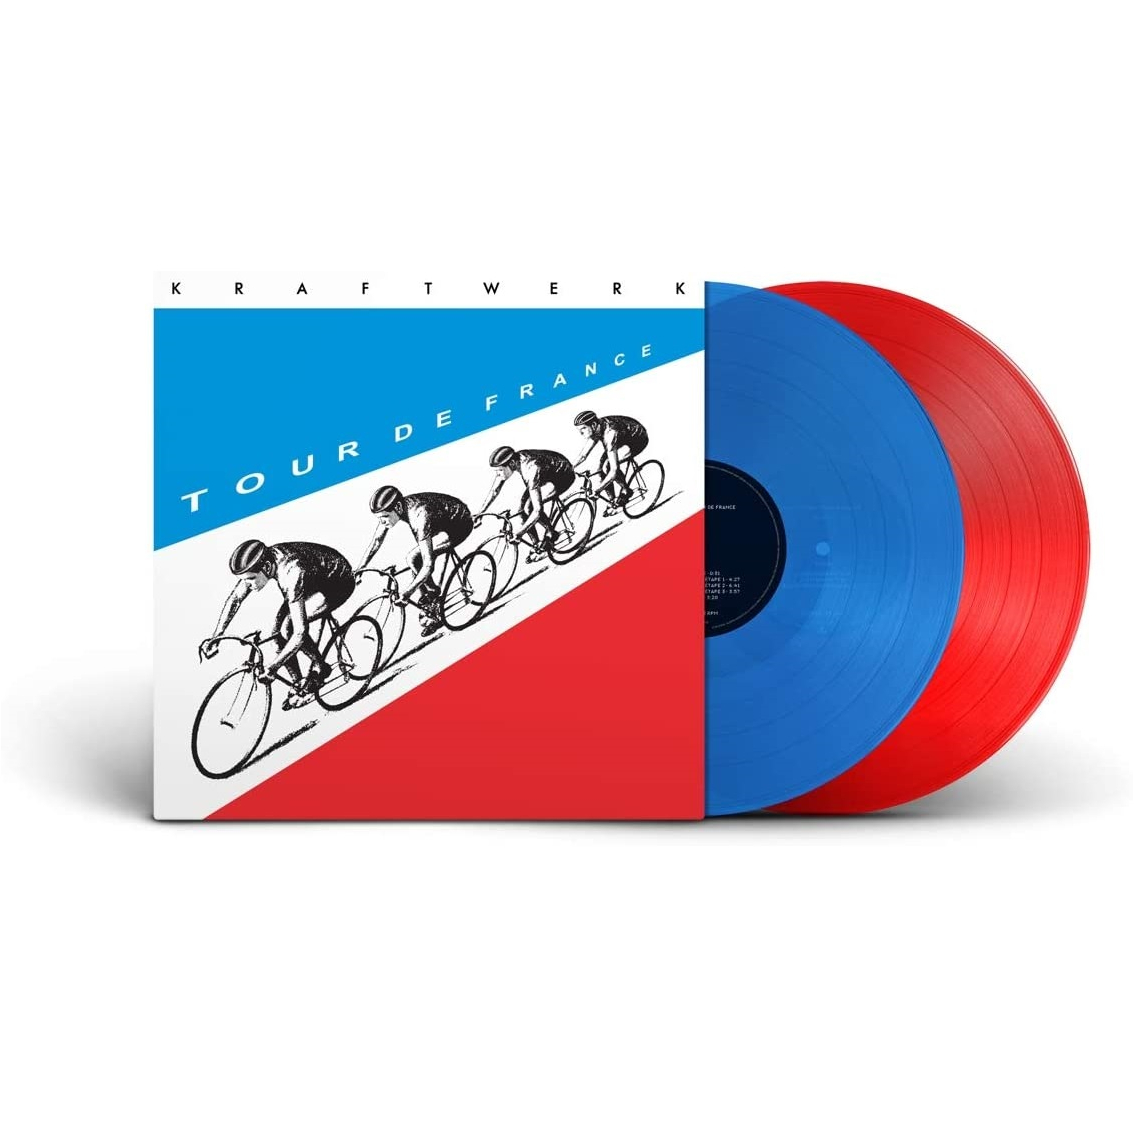 TOUR DE FRANCE (2019 REMASTER) - 2 LP 180 GR. COLORED RED / BLUE VINYL + BOOKLE